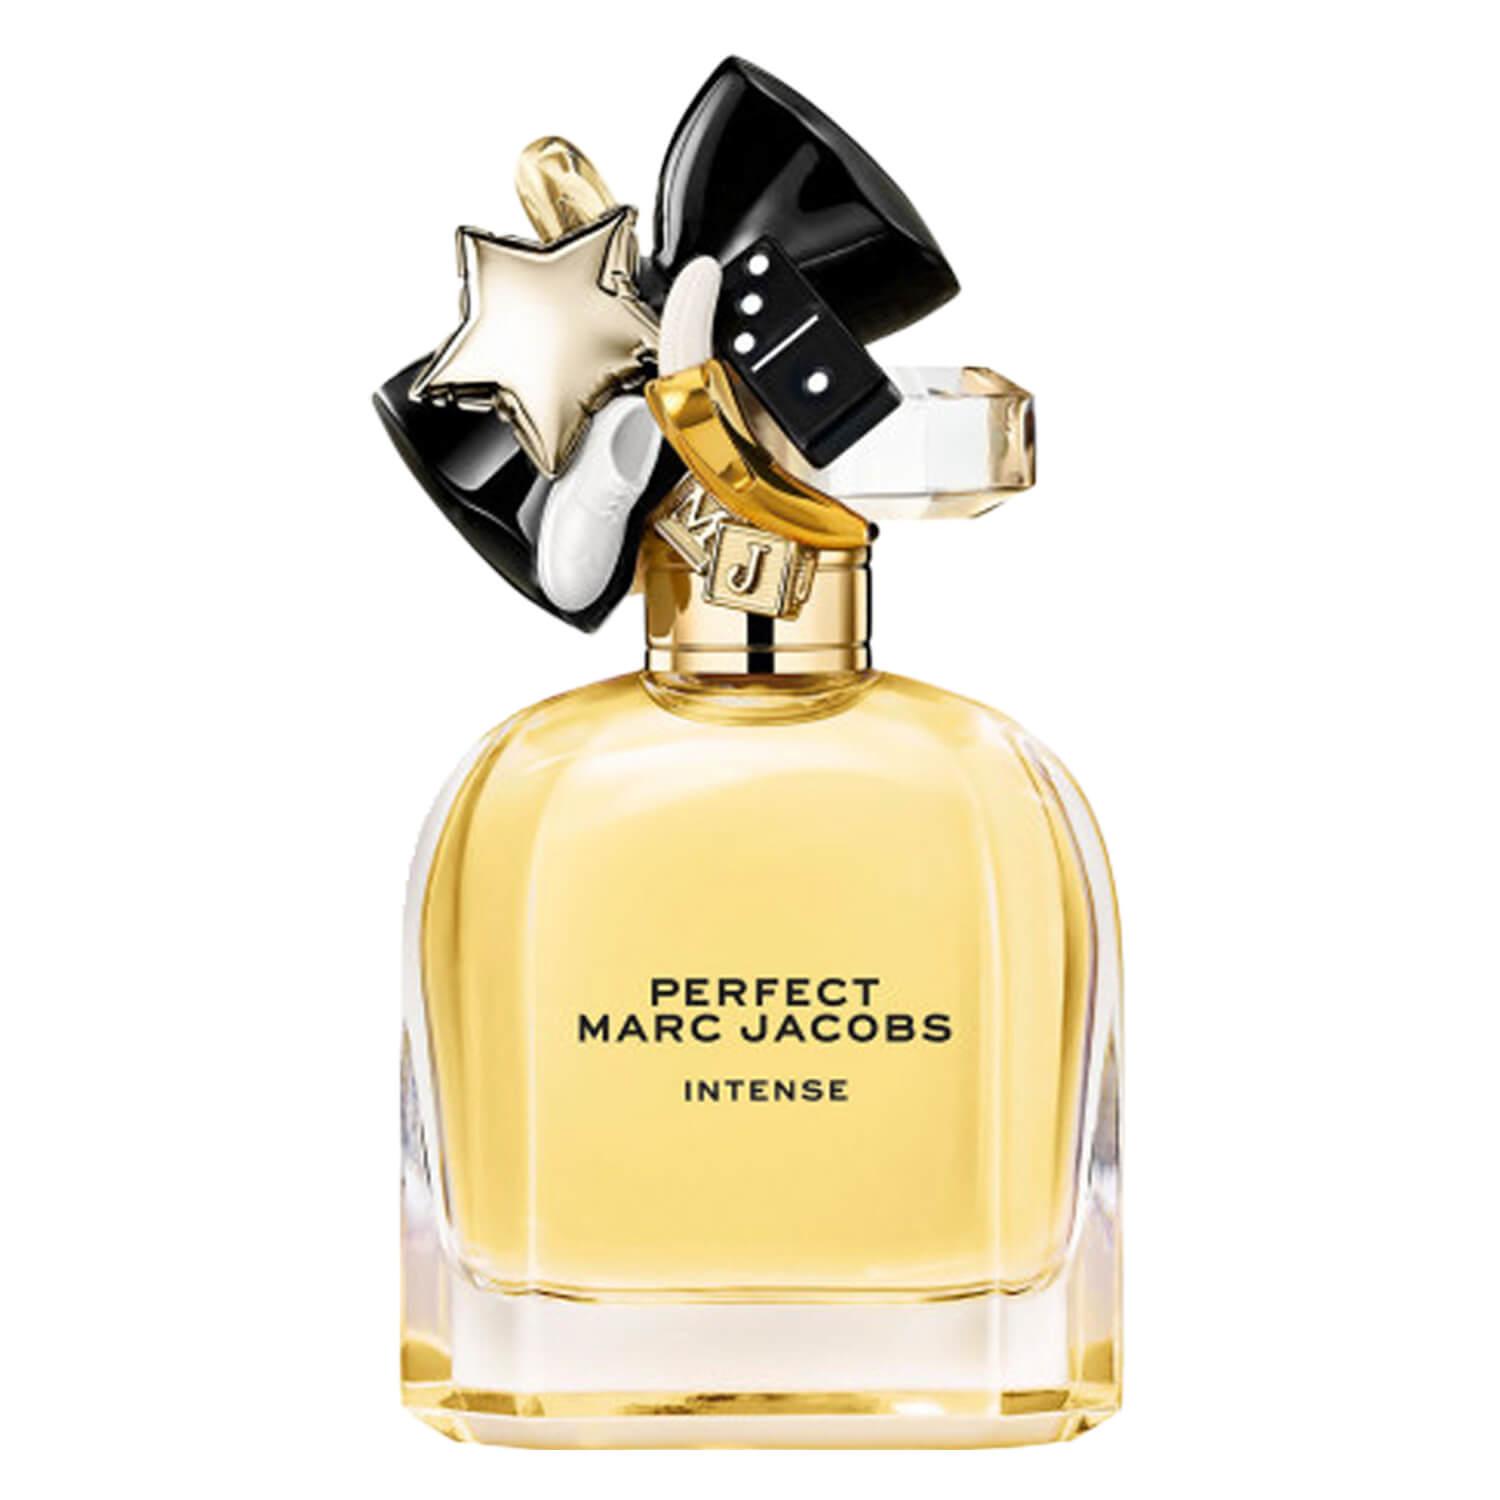 Marc Jacobs - Perfect Intense Eau de Parfum